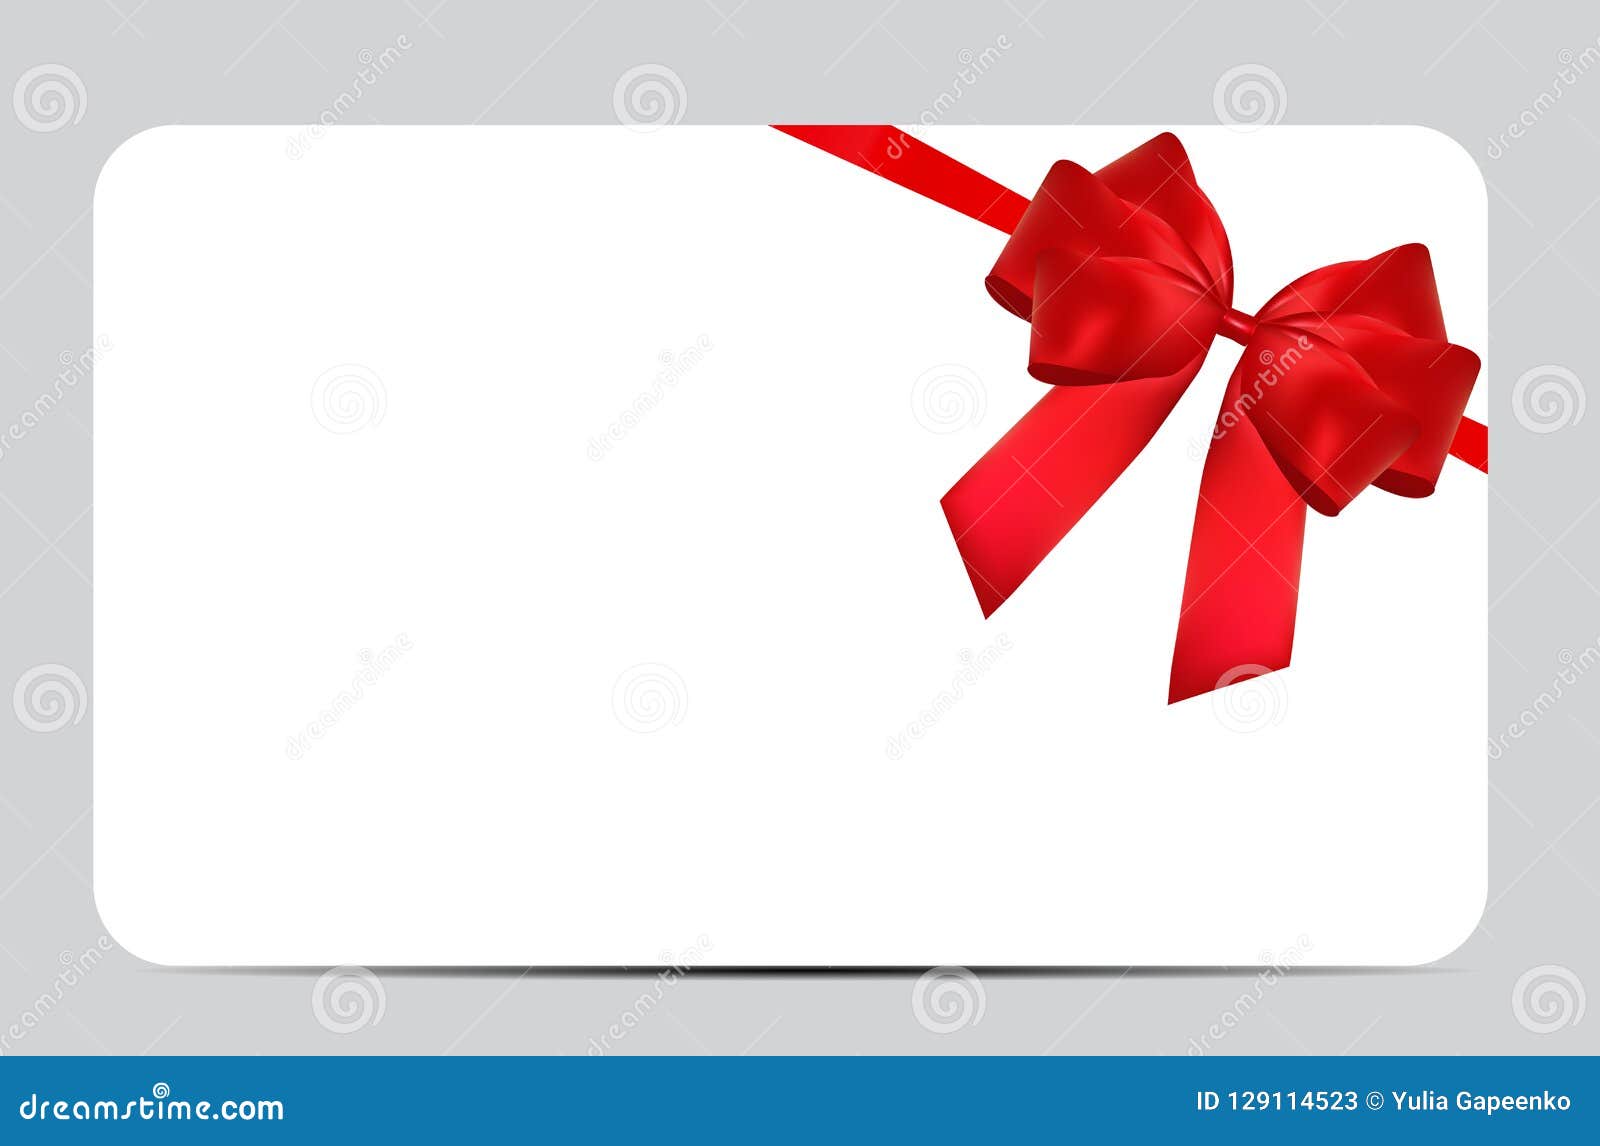 Gift Ribbon & Card